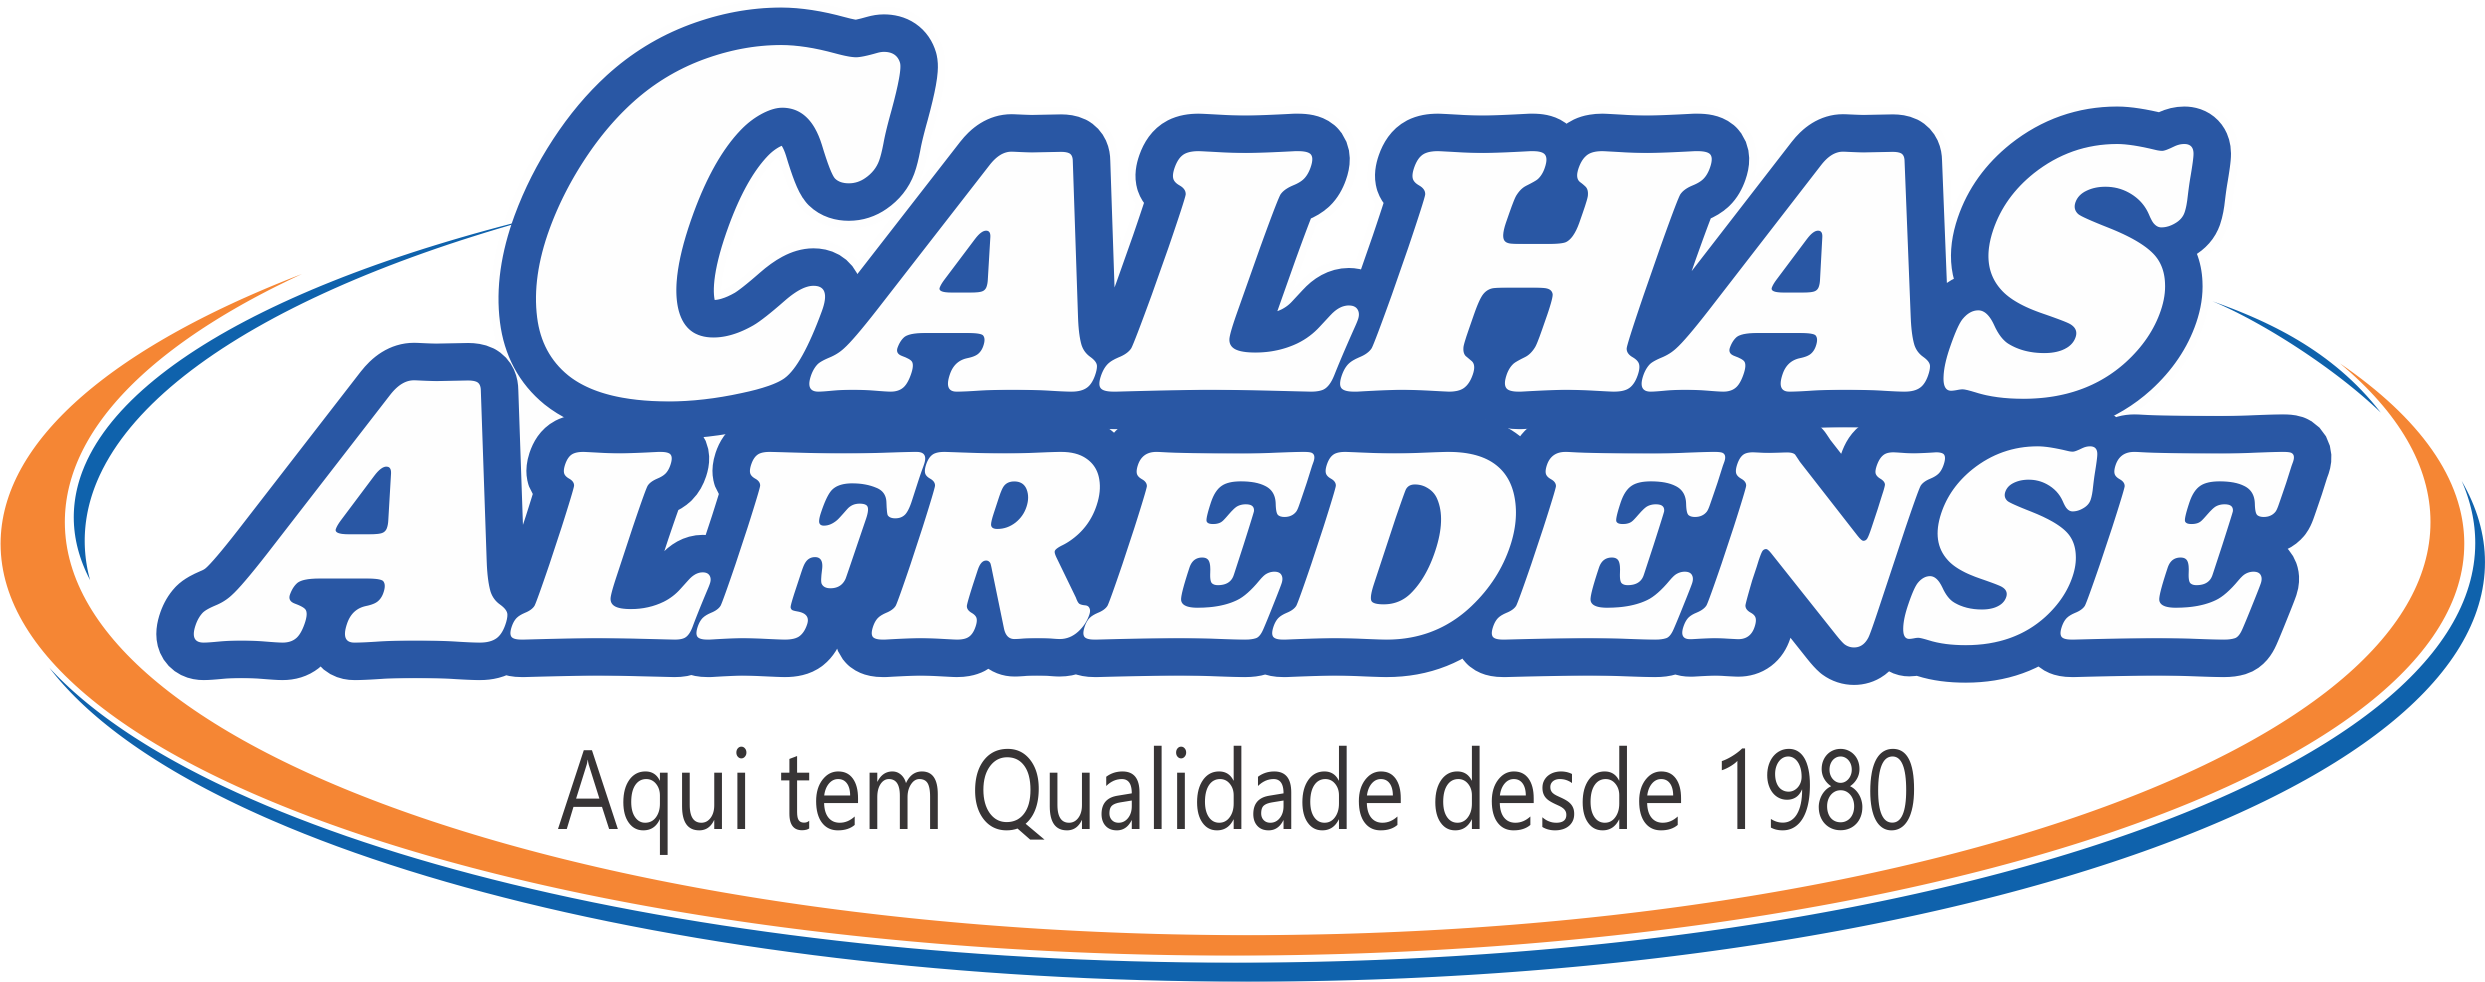 Calhas Alfredense (48) 3242-1203